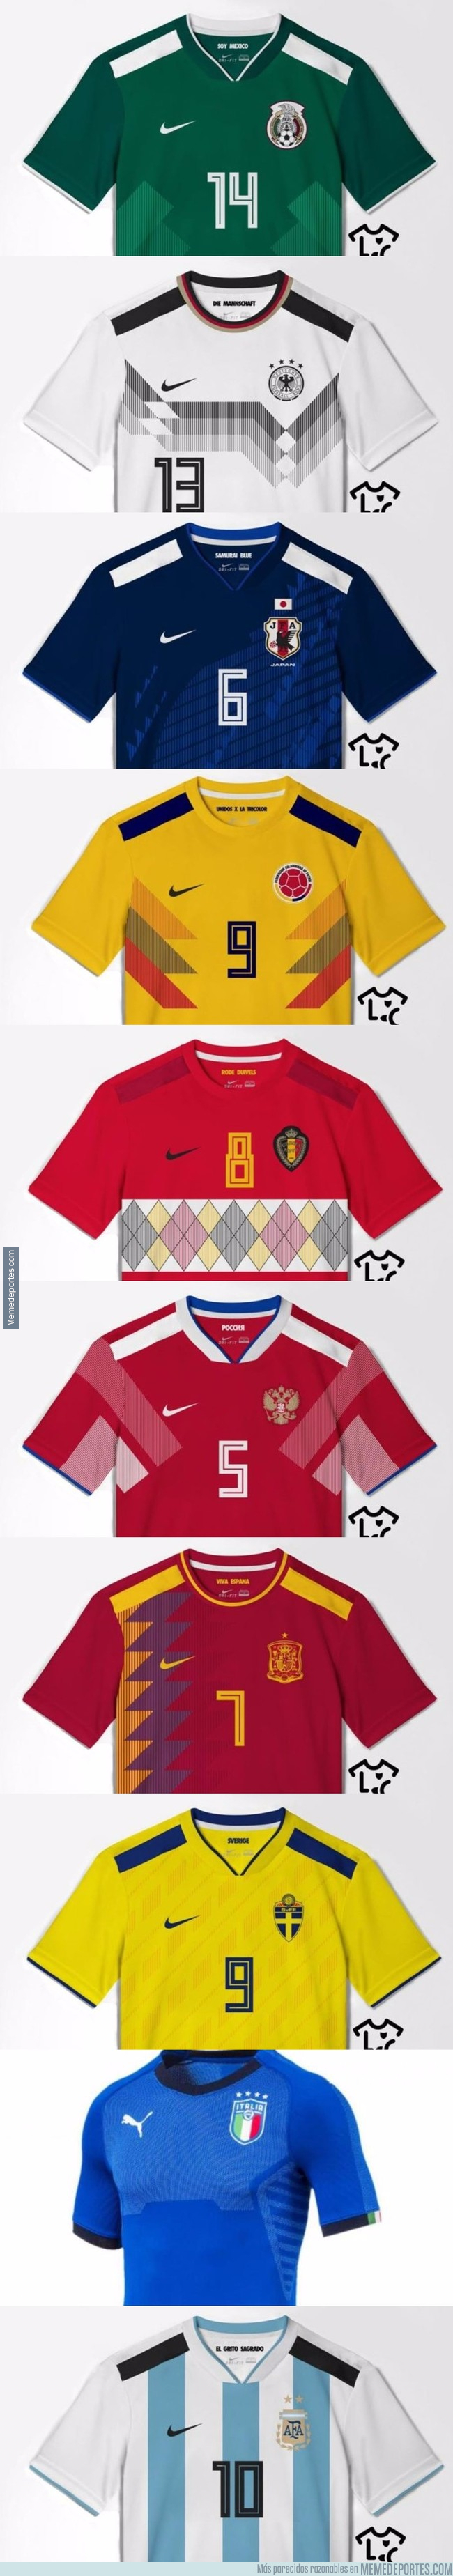 1005771 - Las 10 camisetas que se filtraron para el Mundial de Rusia 2018